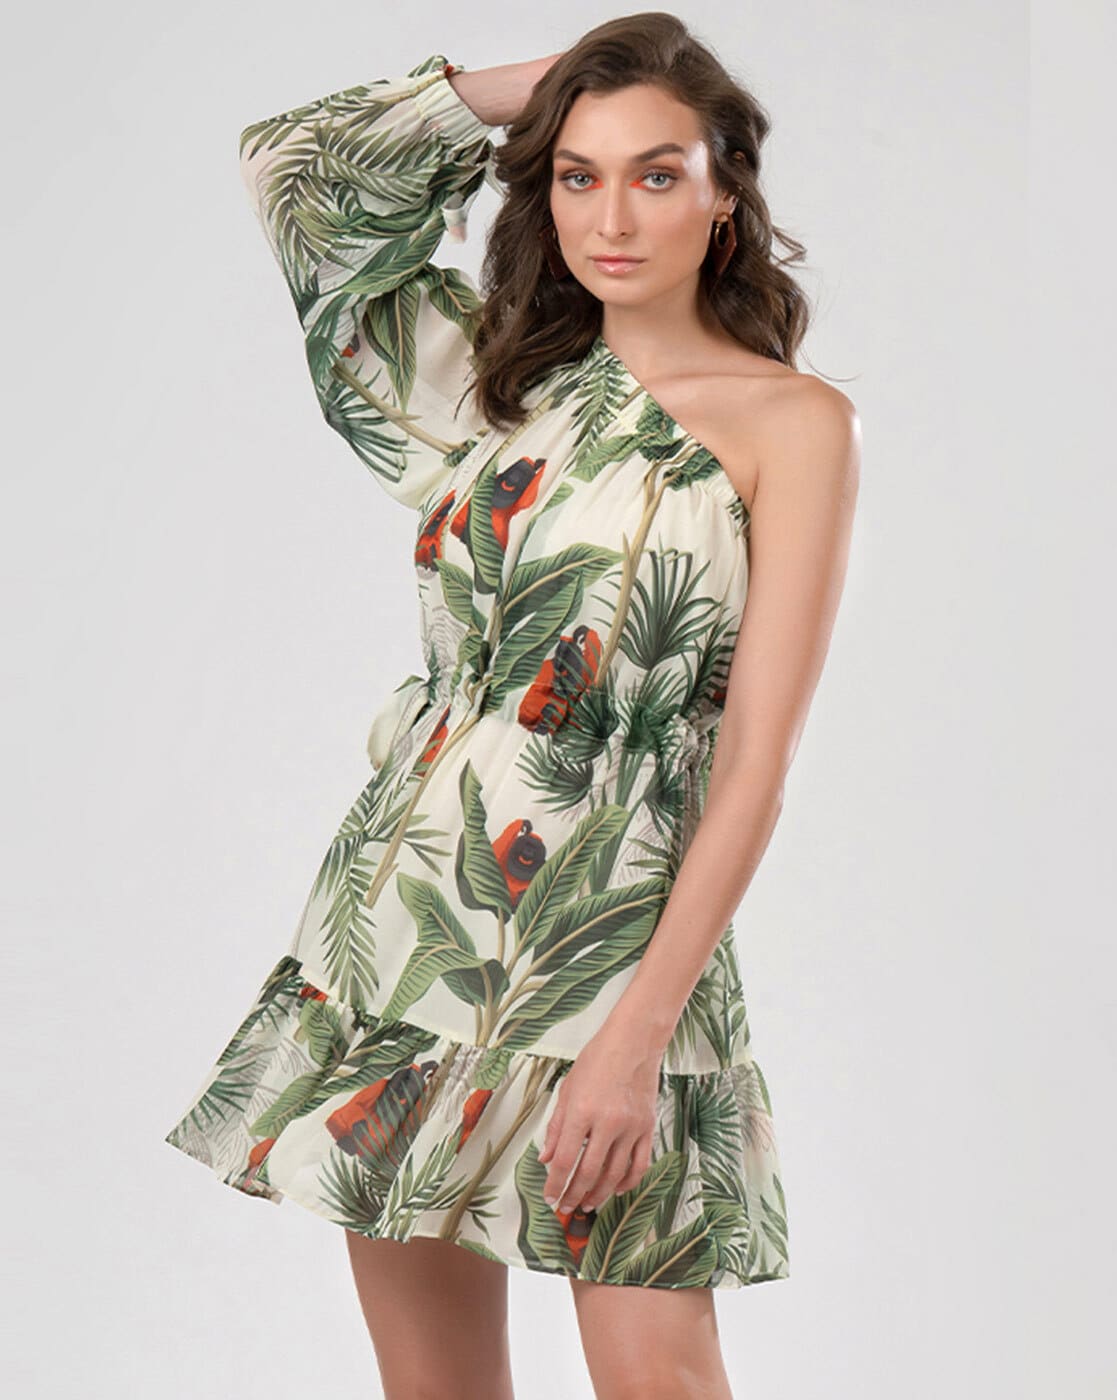 Plumeria Paradise Tropical Print Long Tank Hawaiian Dress in Jade –  Paradise Clothing Co